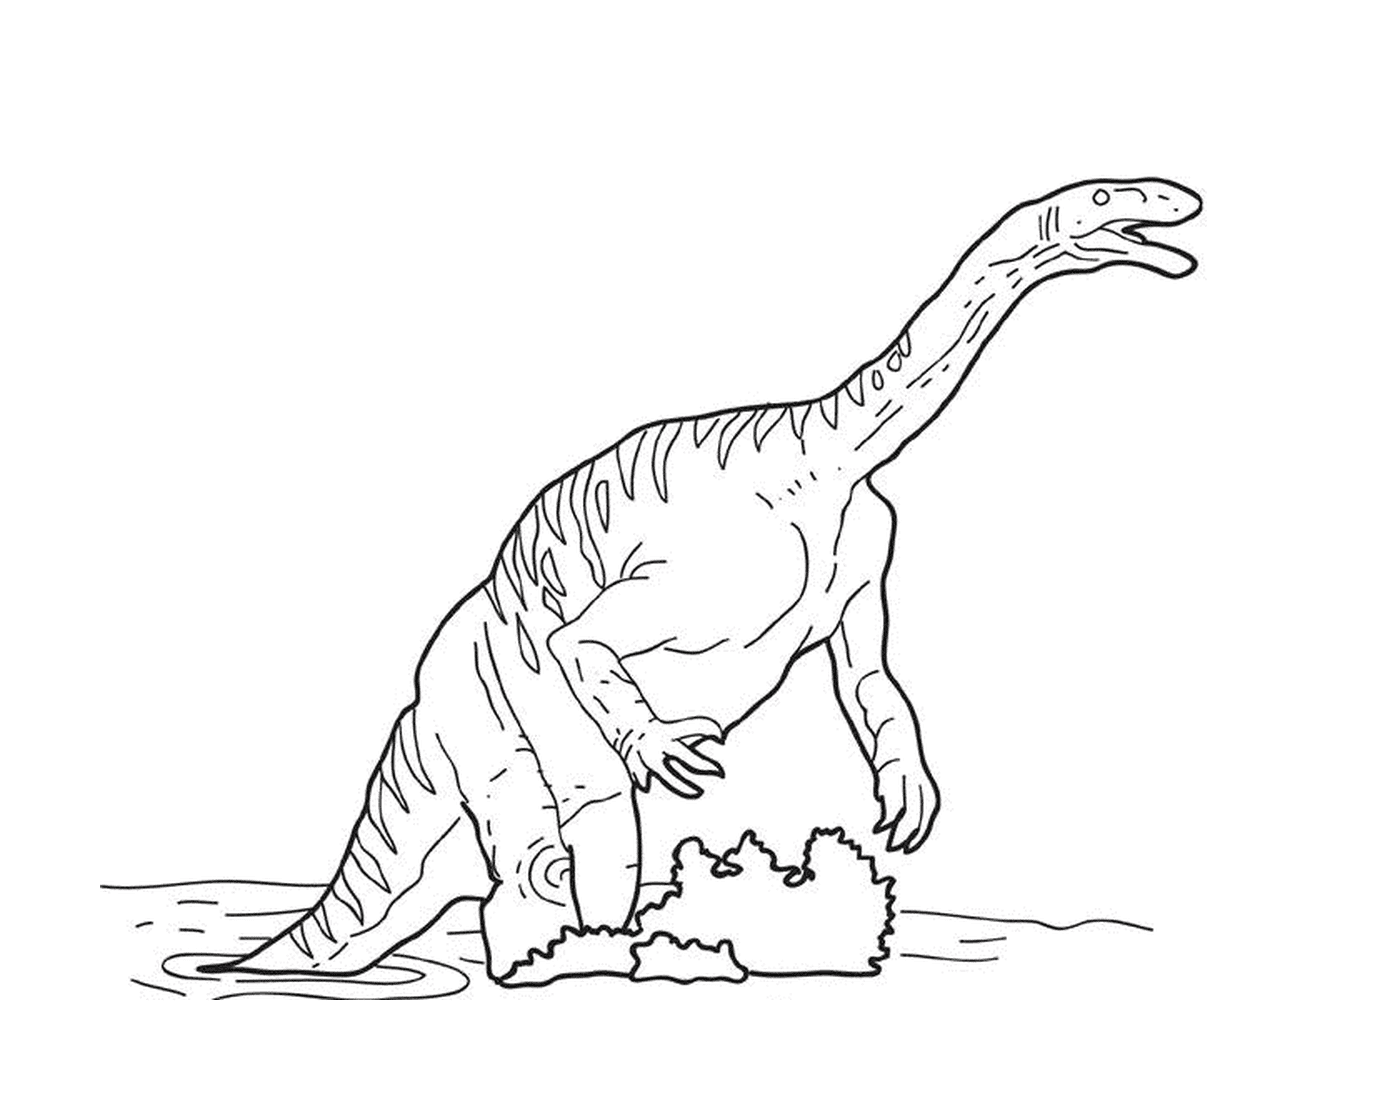  Ein Dinosaurier spielt im Wasser 